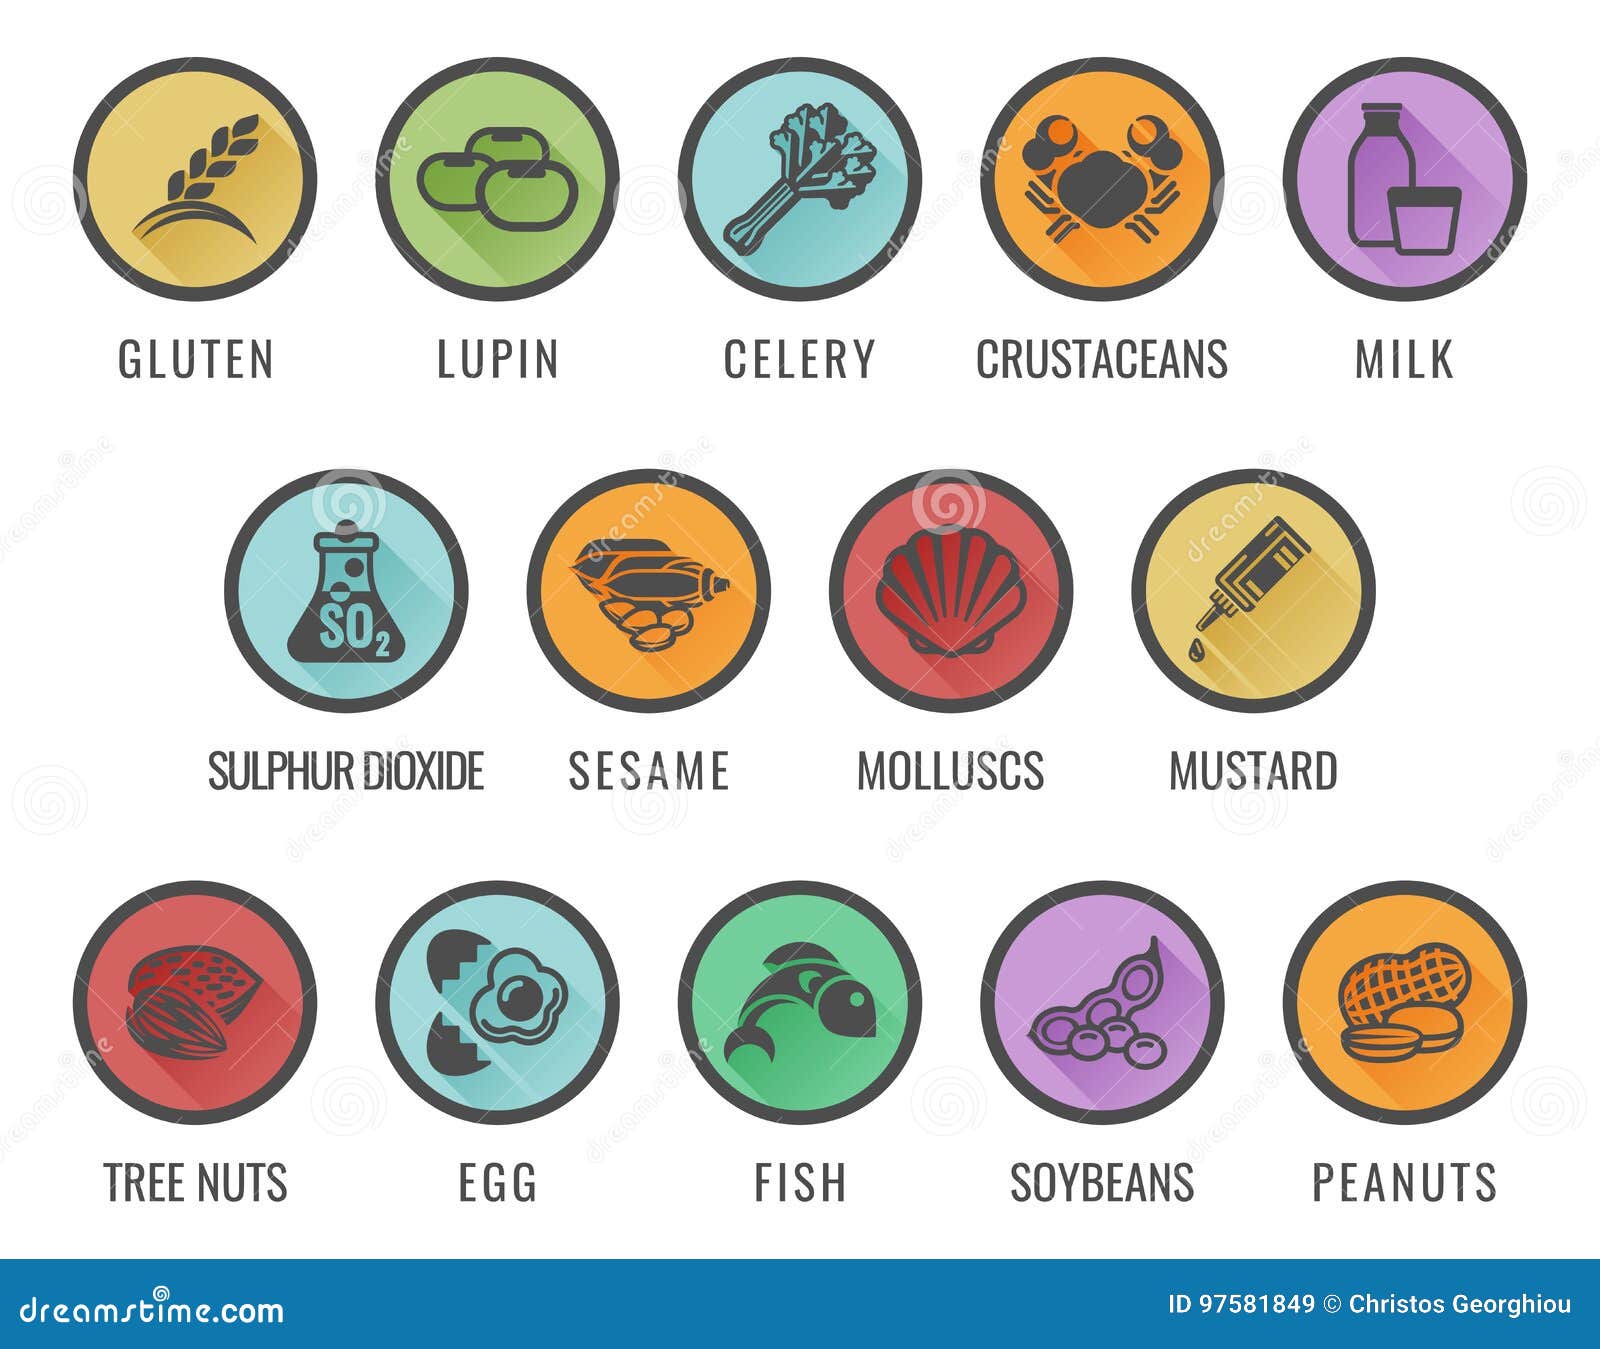 food allergen allergy icons